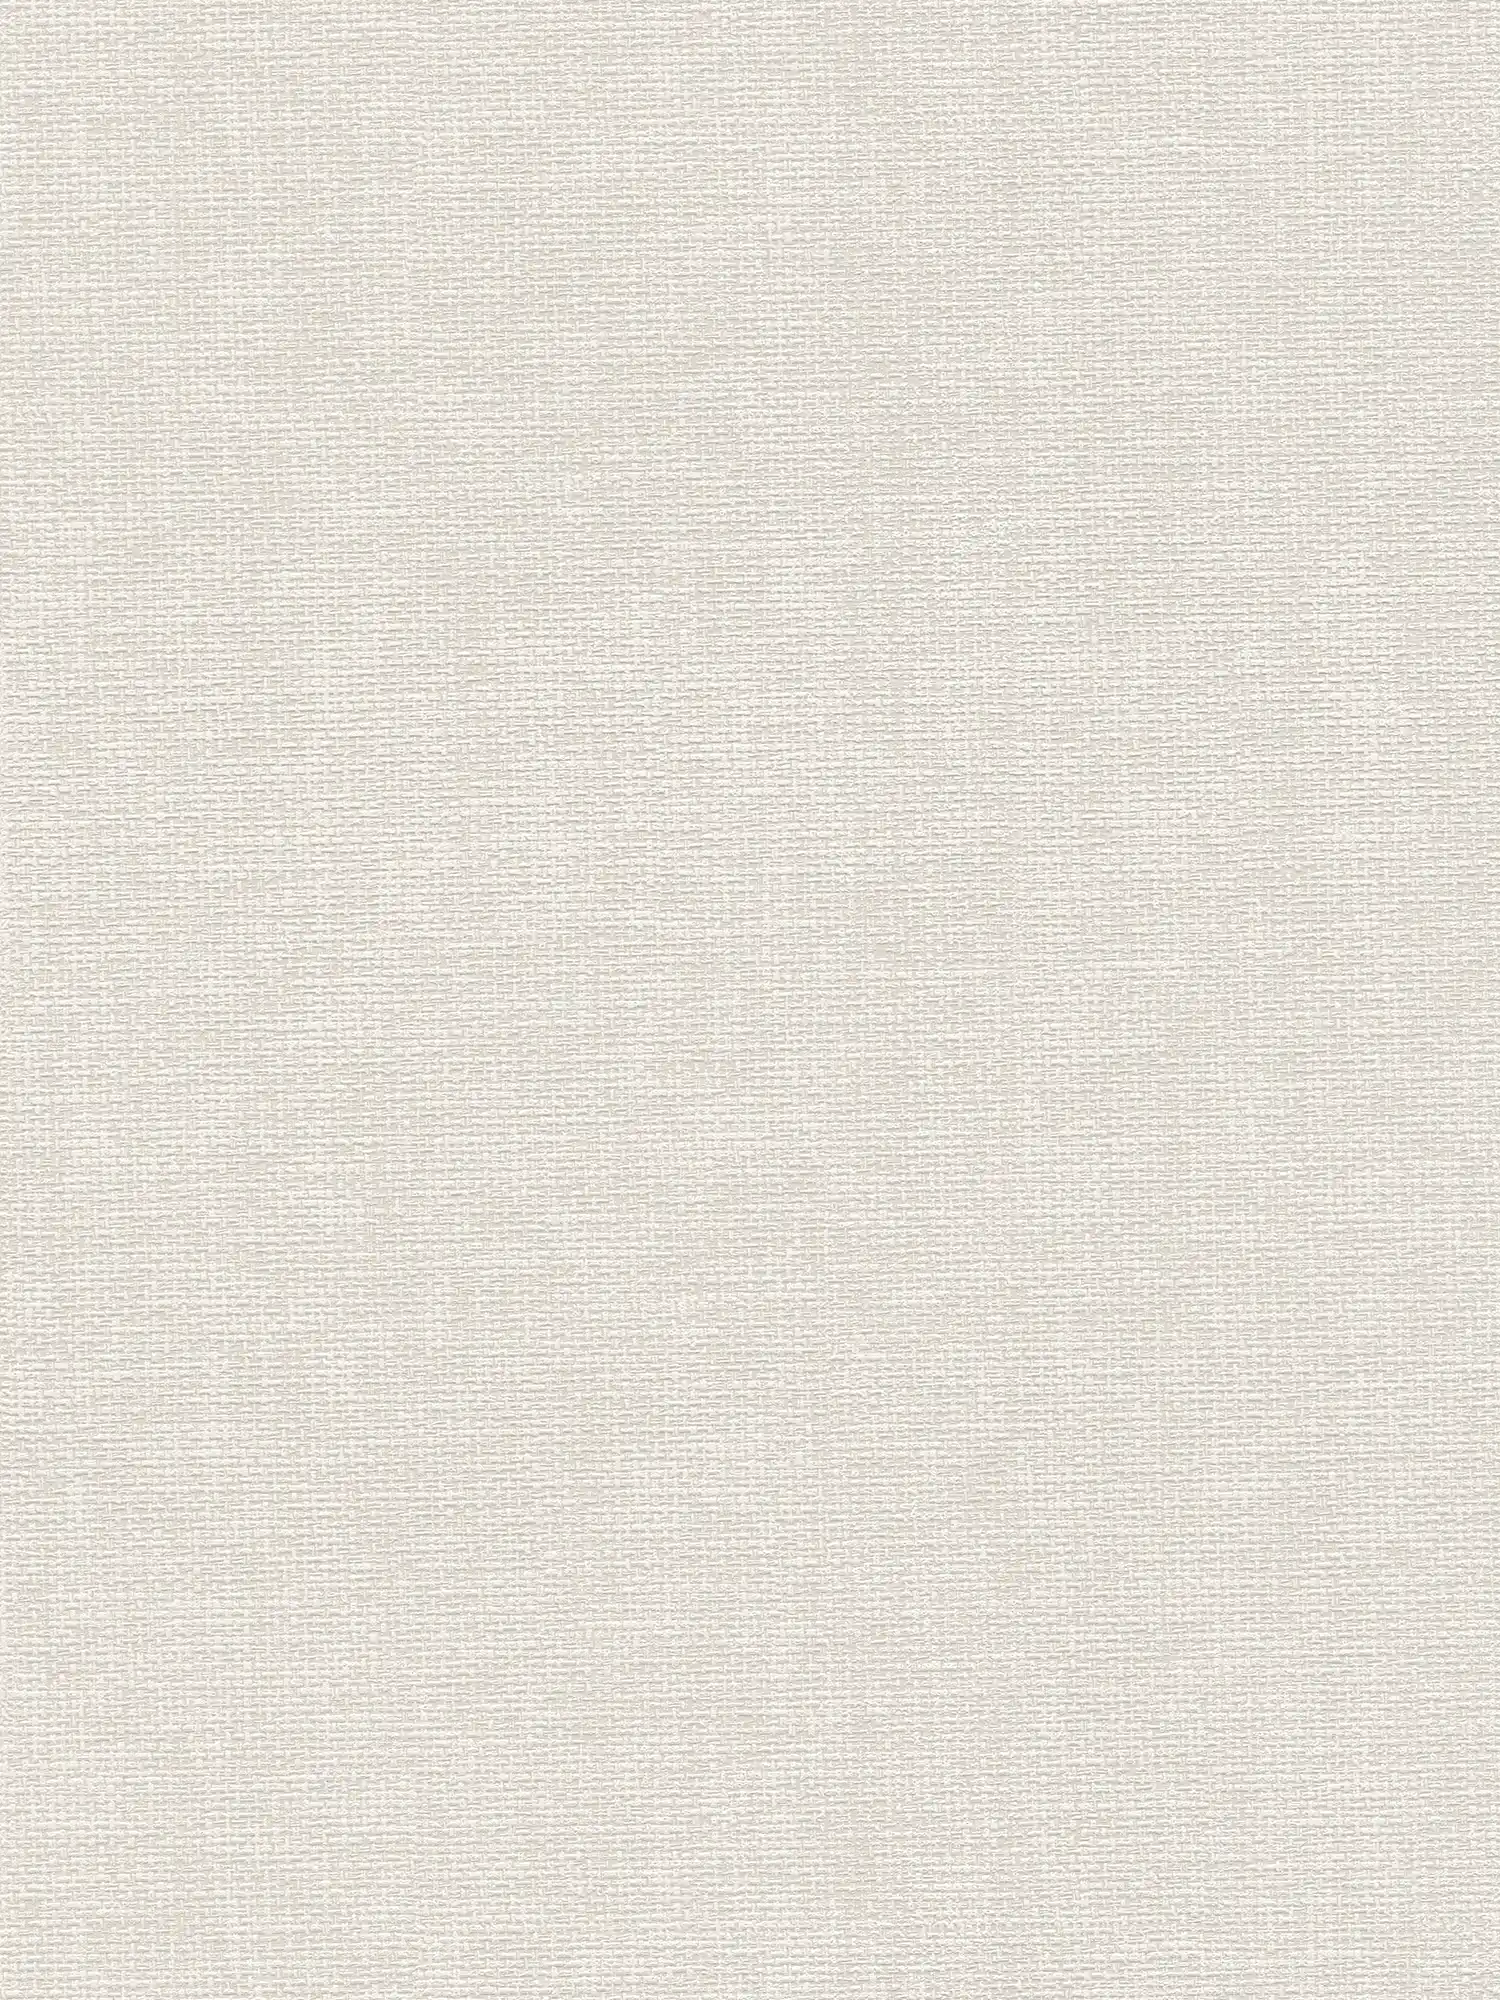 Papel pintado de diseño escandinavo con aspecto de lino - gris
